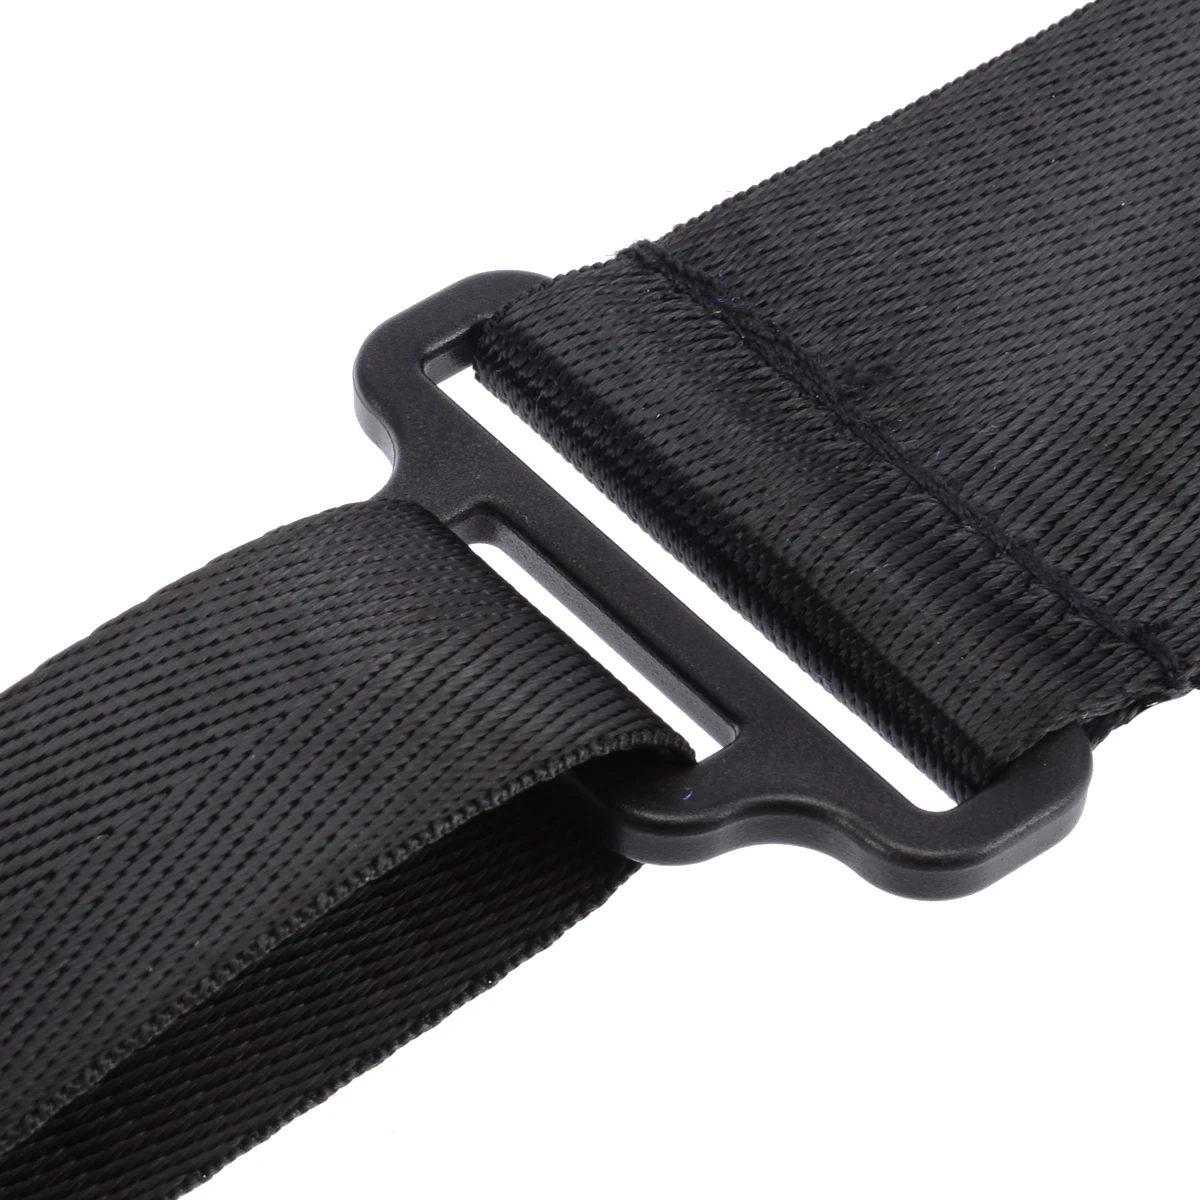 1 шт. черный ремень для переноски скутер скейтборд Ручной ручка для переноски плечевой ремень для Xiaomi Mijia M365 скутер